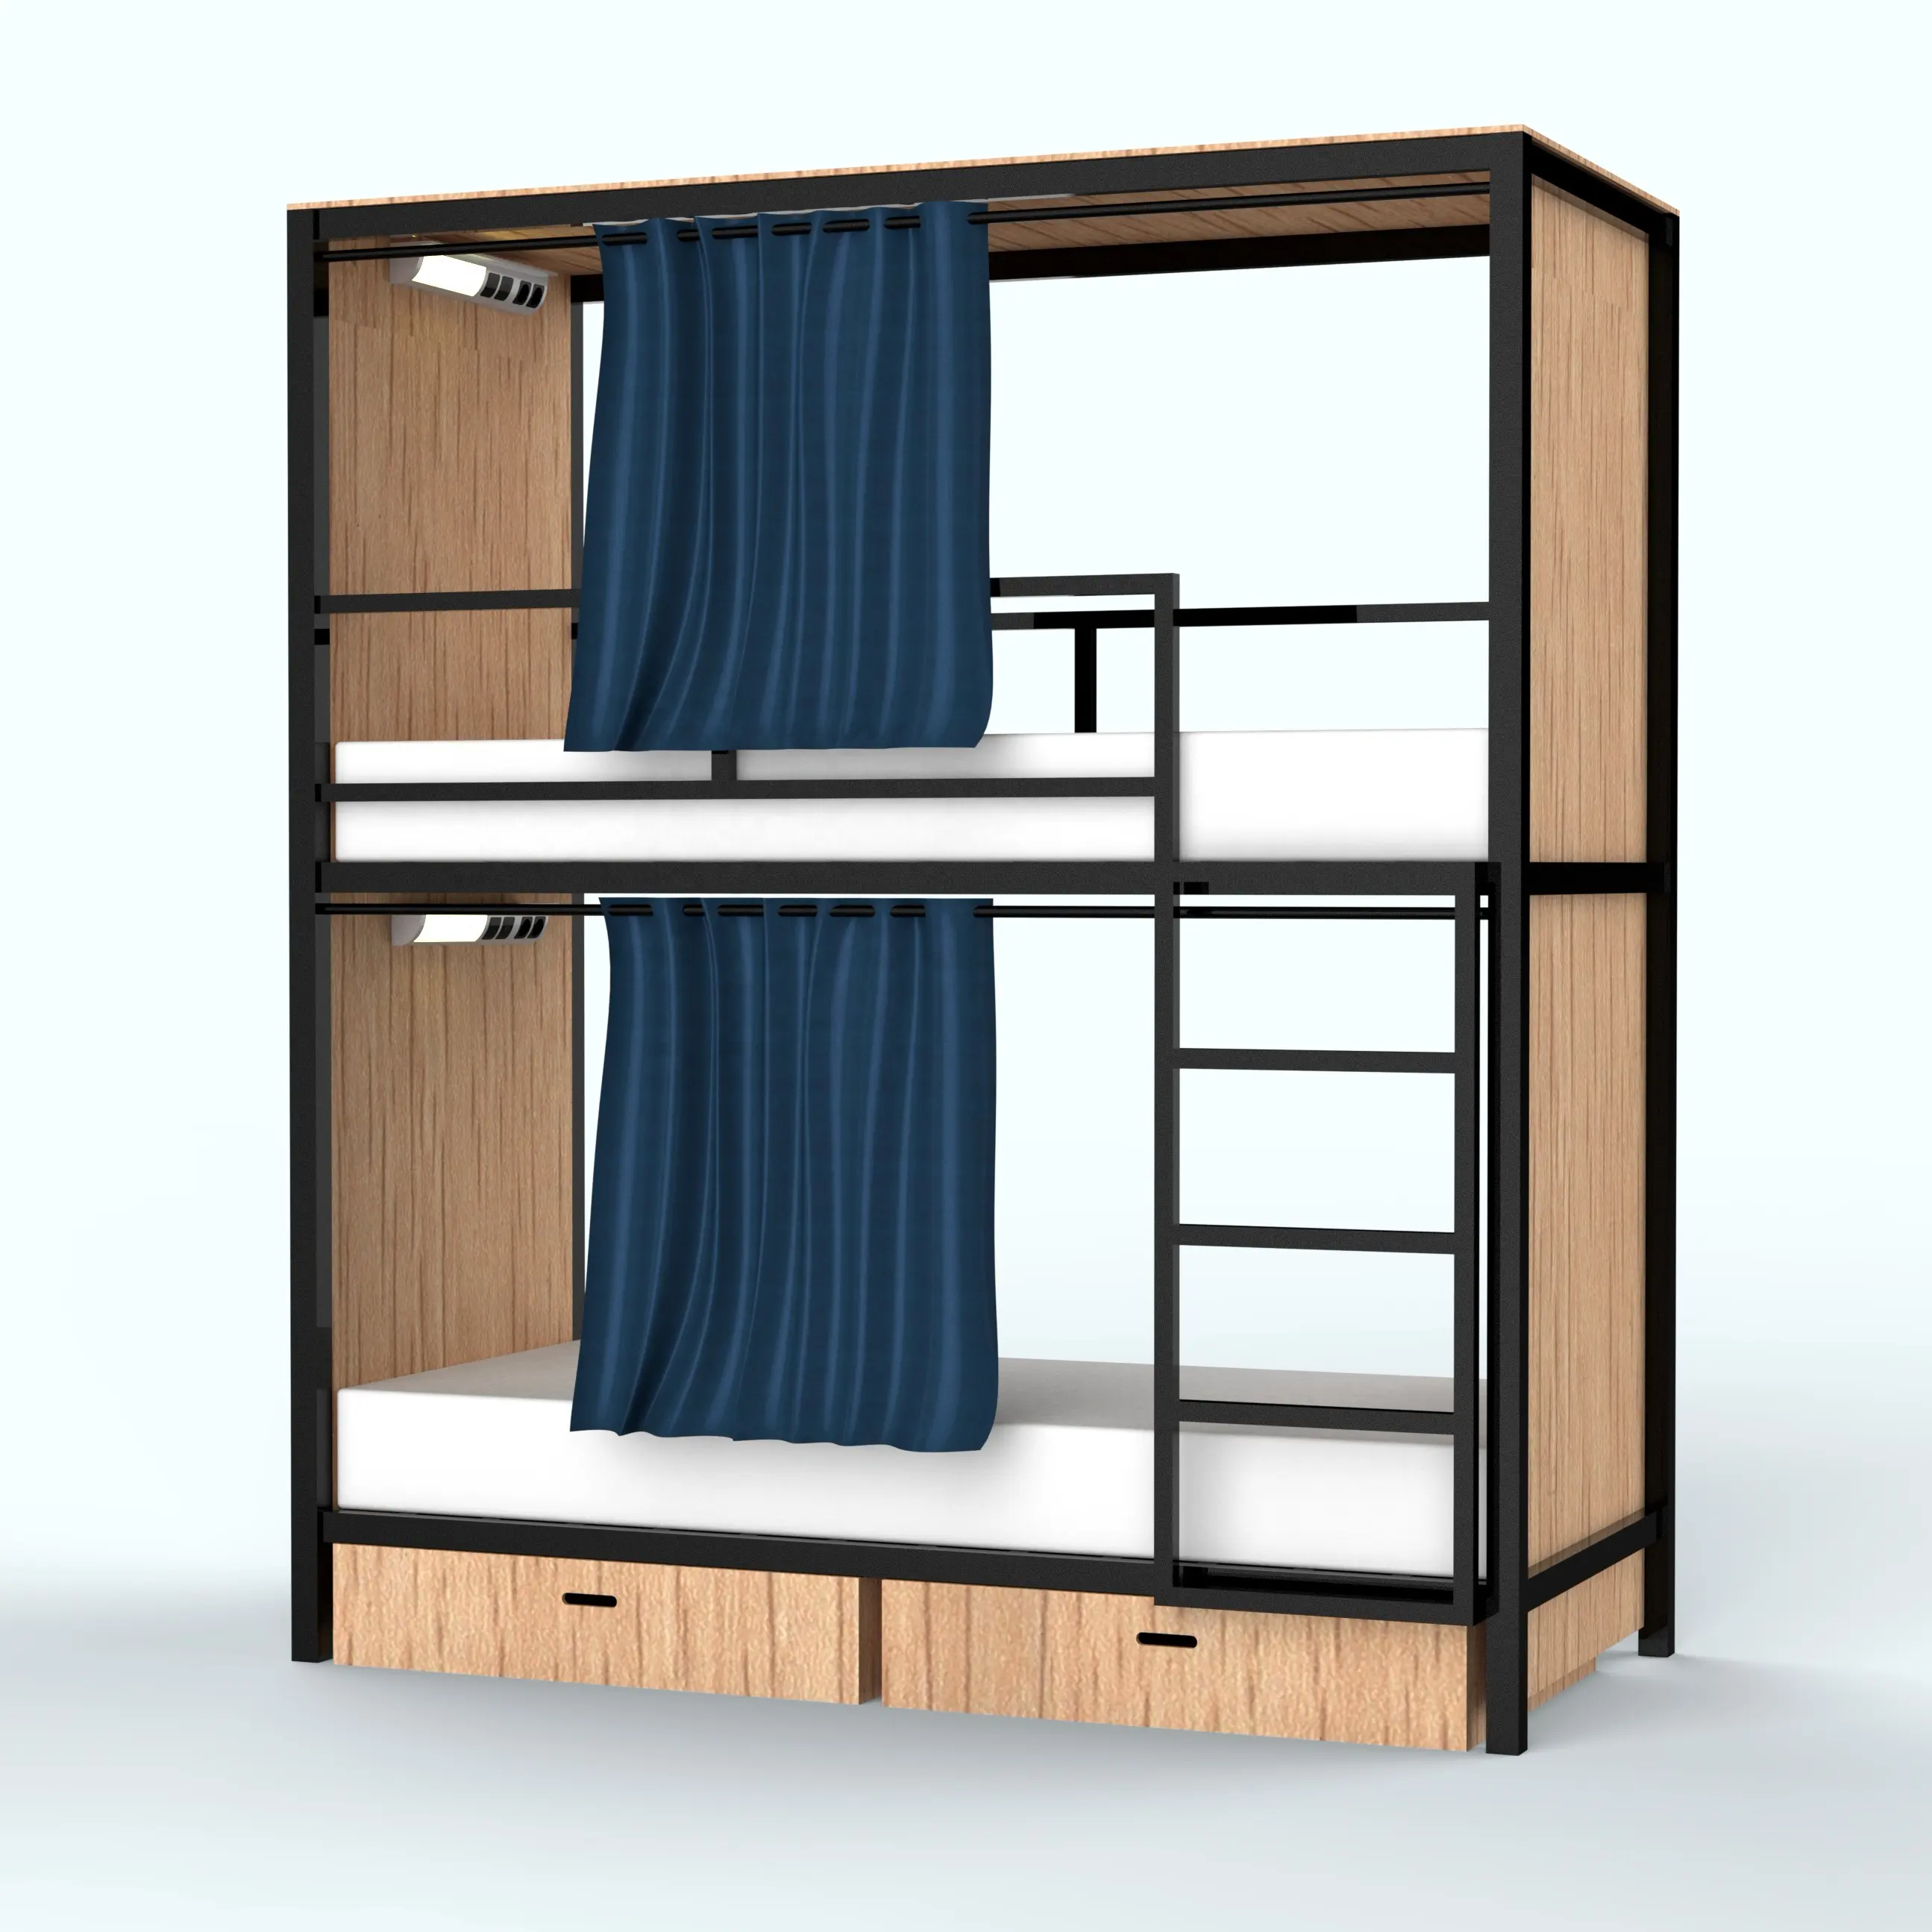 Высококачественные двухуровневые детские кроватки для общежития колледжа